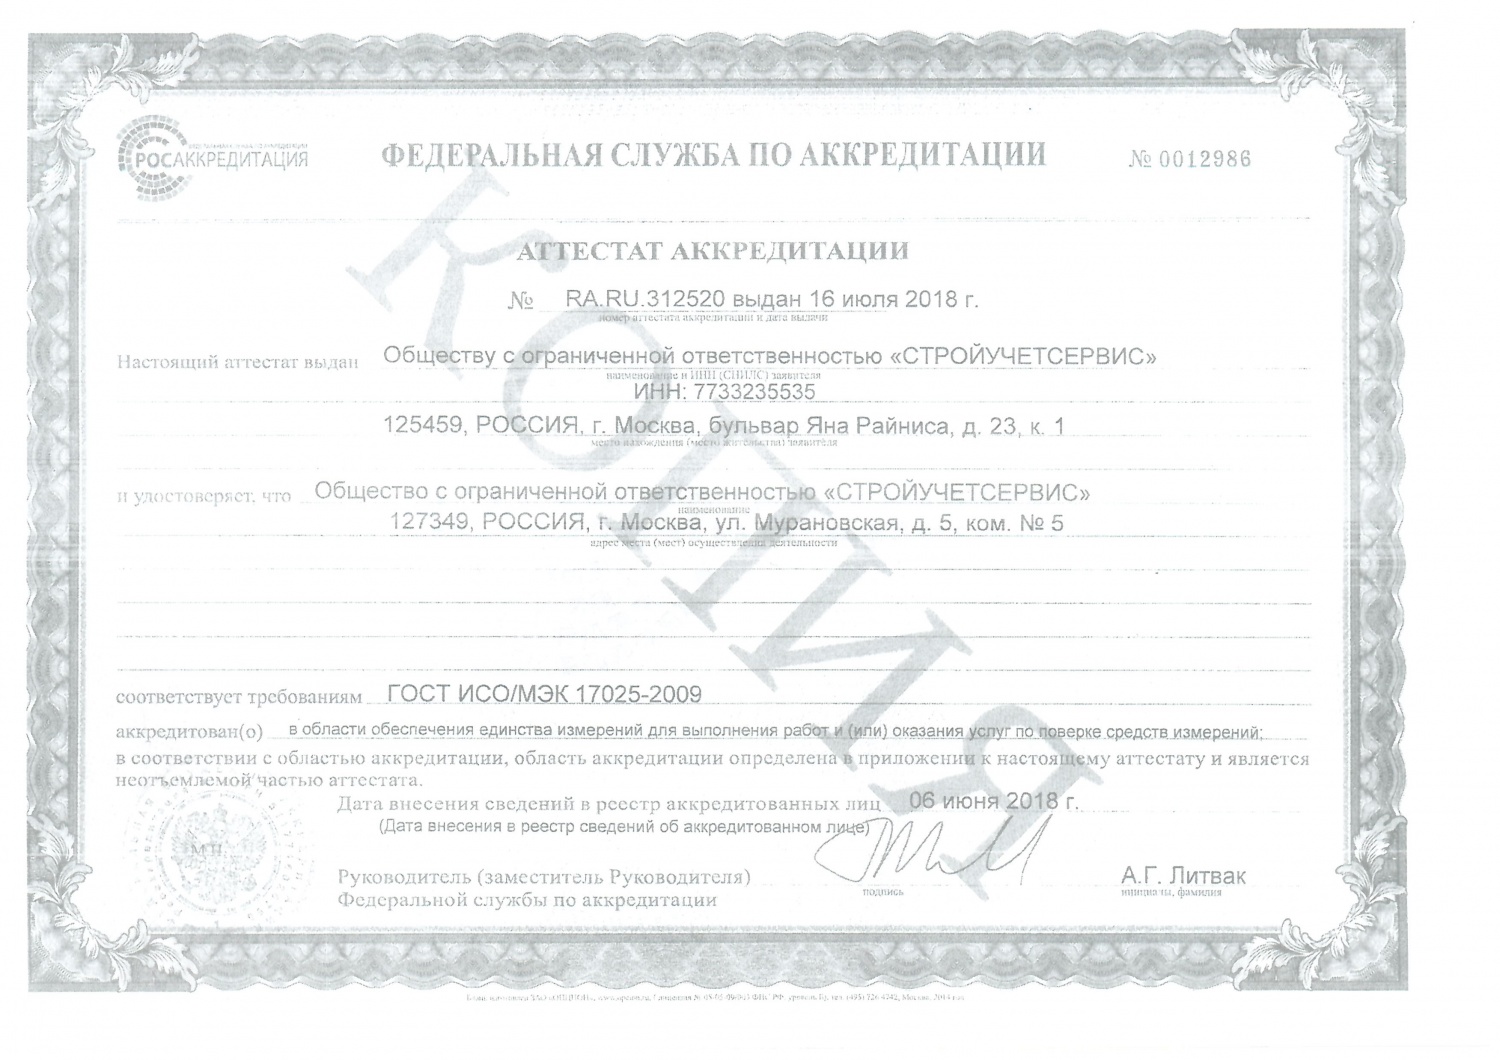 Сертификации на право повреки